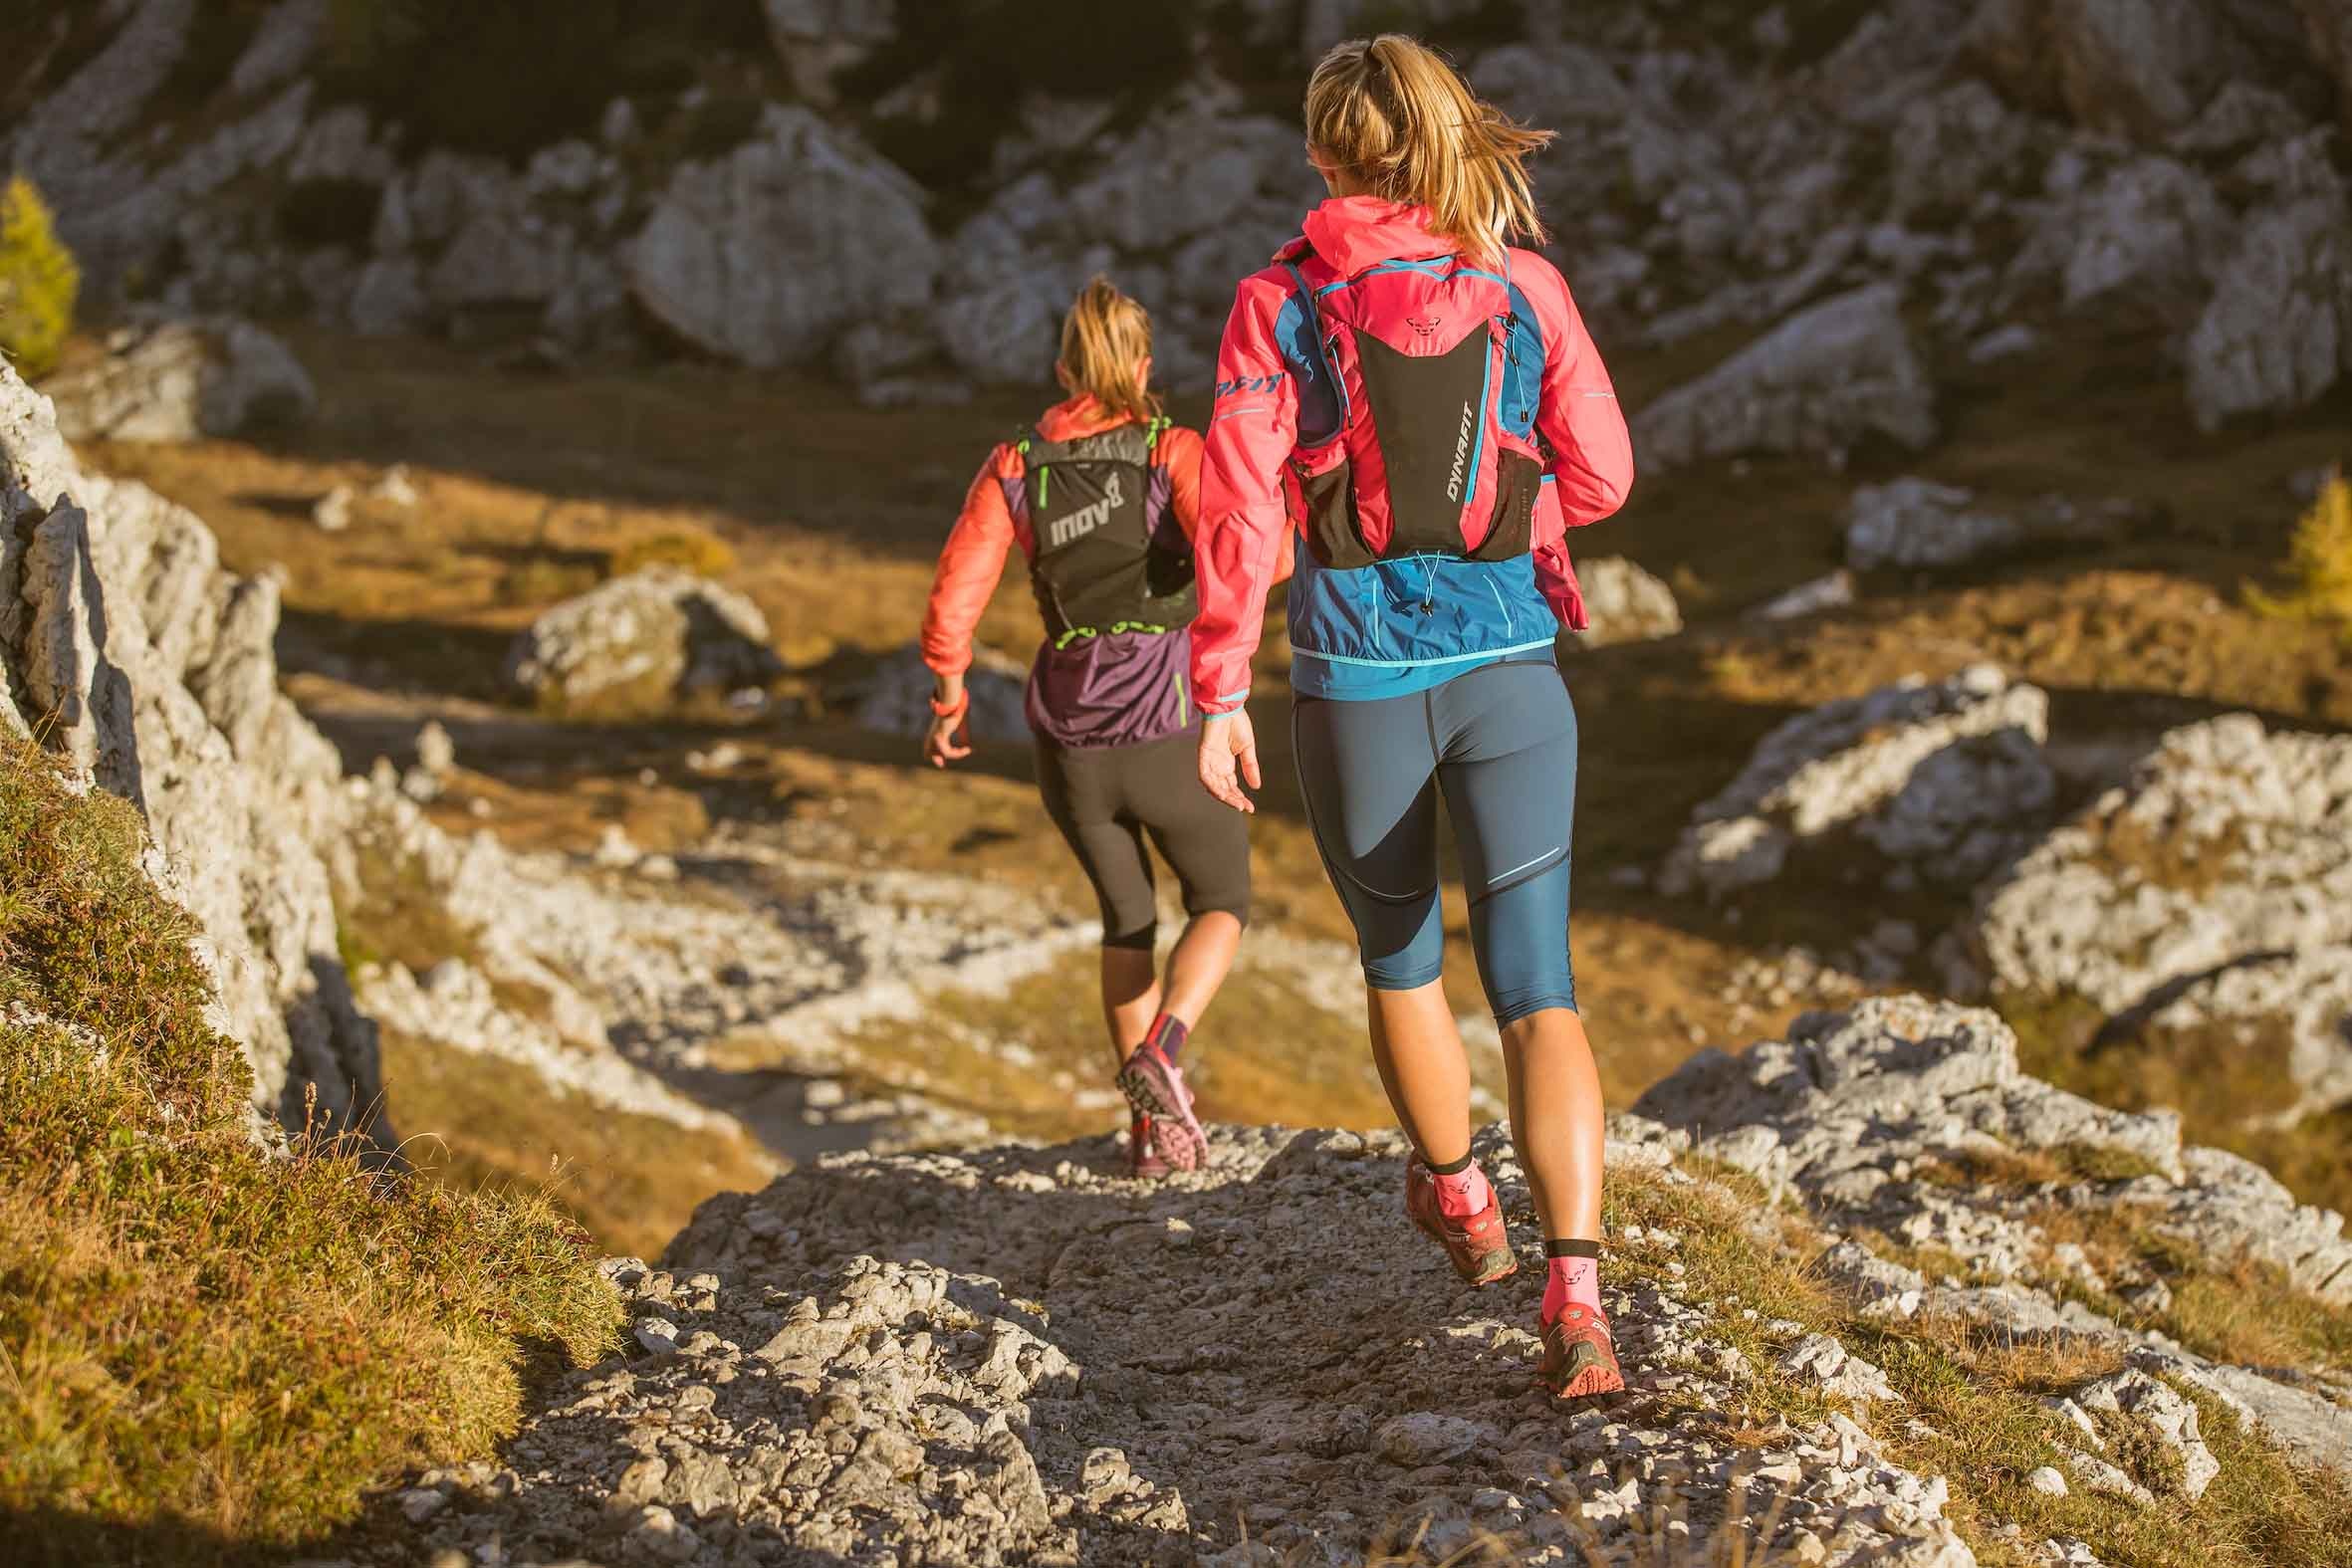 Beim Laufen auf unebenem Terrain trainieren Bergbegeisterte nicht nur die Fußmuskulatur, das Gleichgewicht und die Koordination sondern bereiten sich so auf lange Touren am Berg vor.